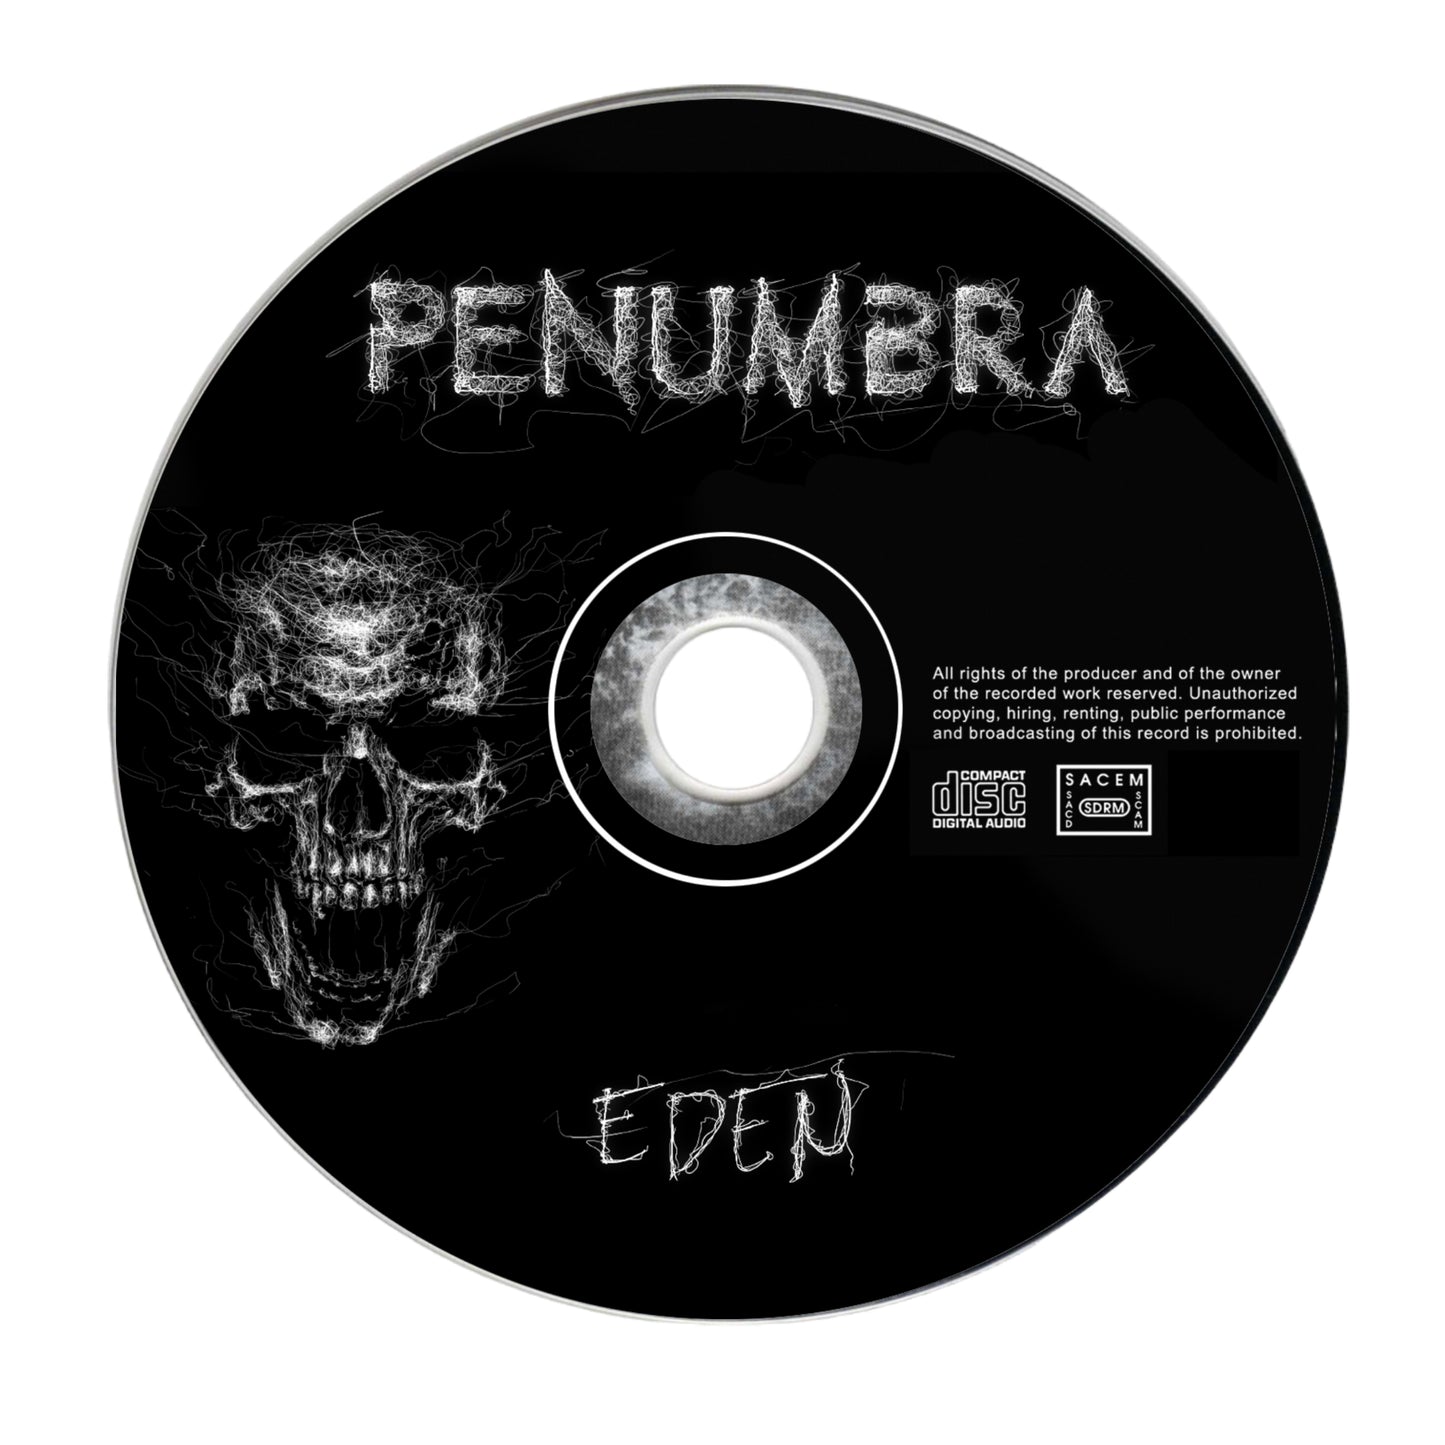 EDEN | CD album